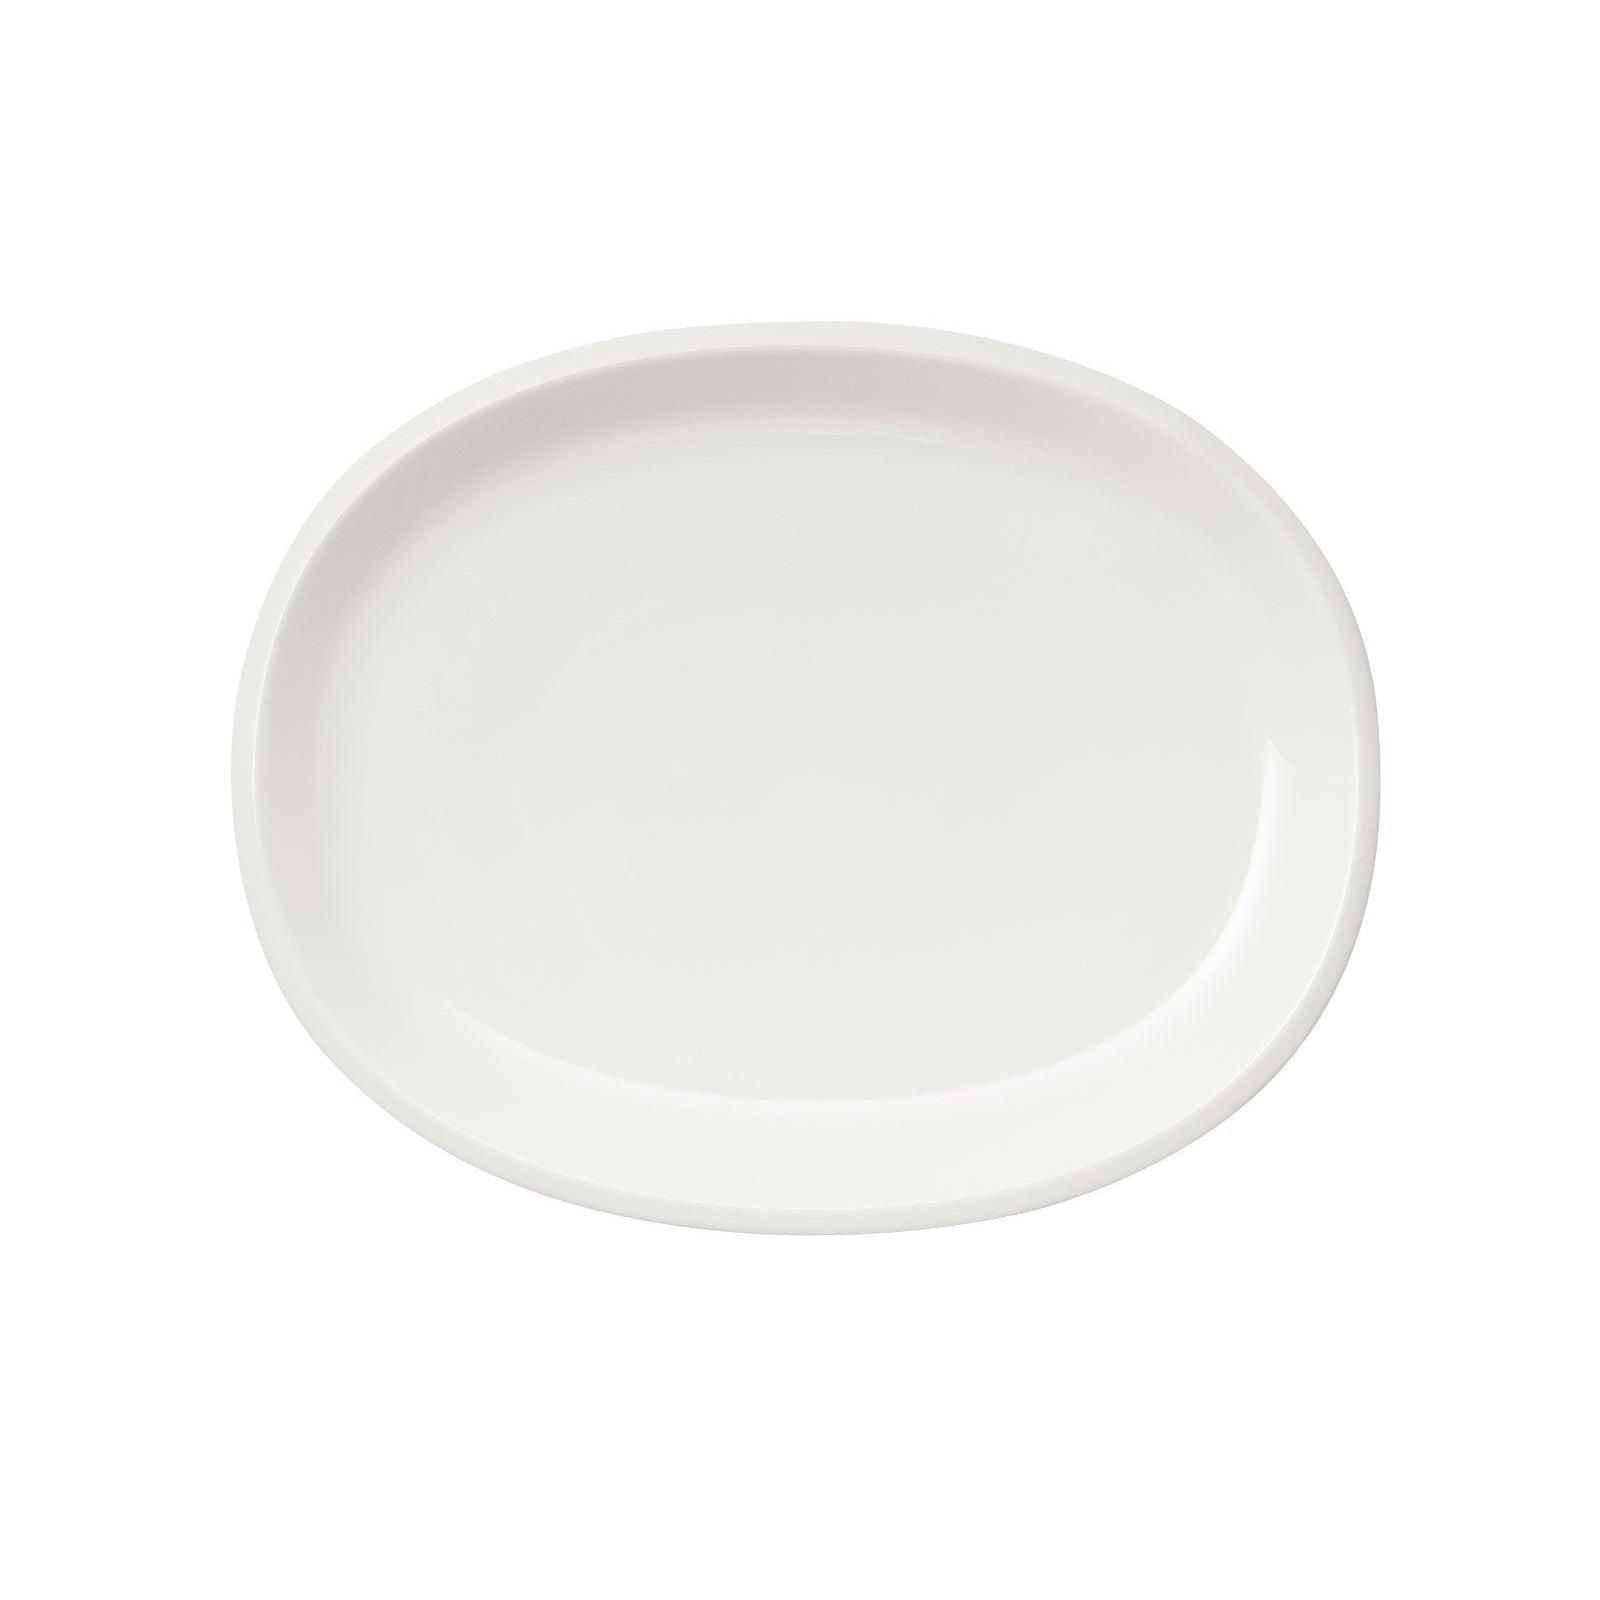 Iittala Raami Servindo Plate White, 35cm